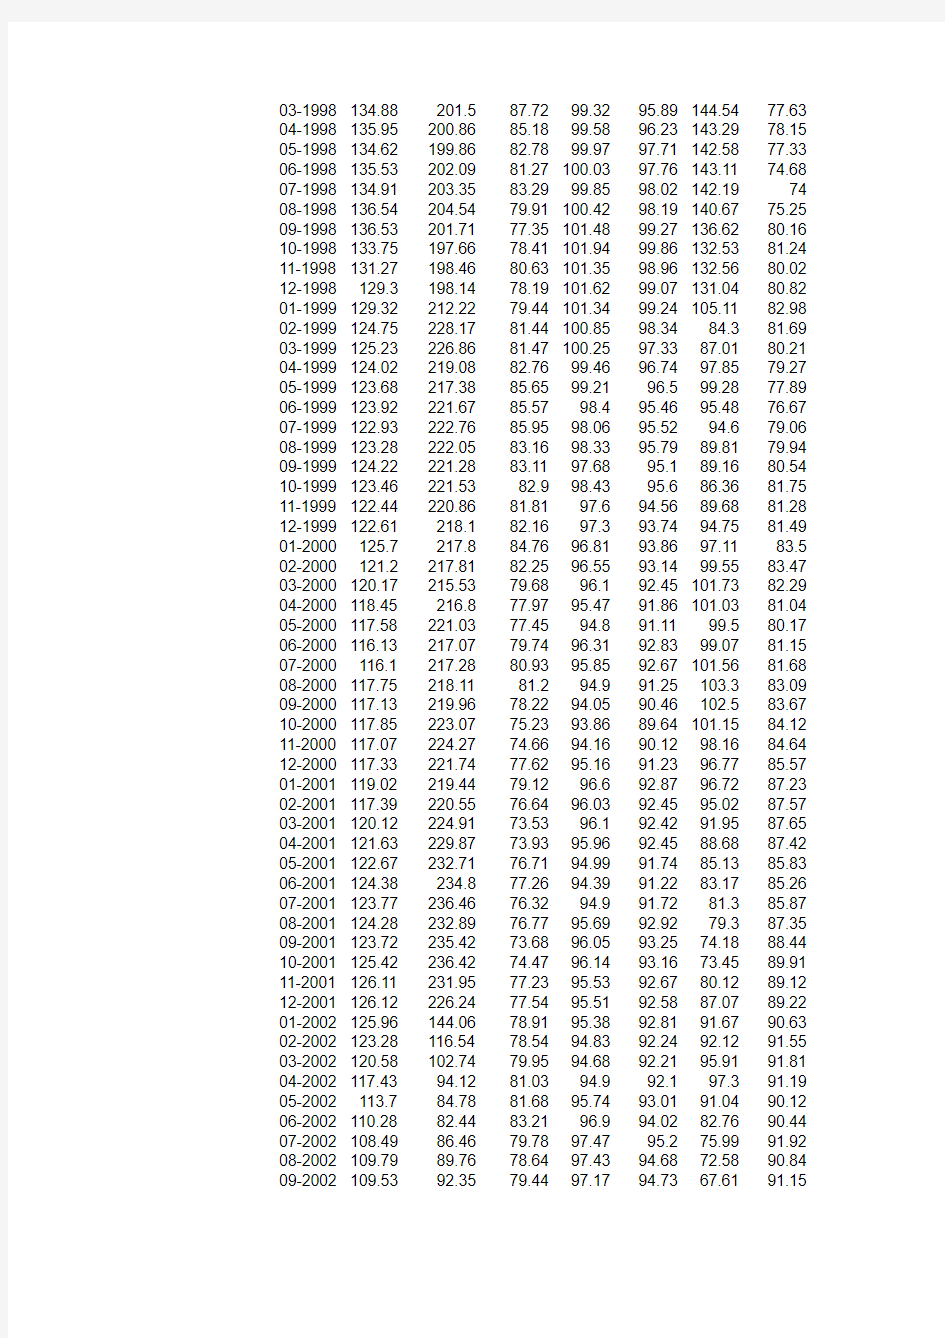 BIS人民币实际有效汇率月度数据1994-2010